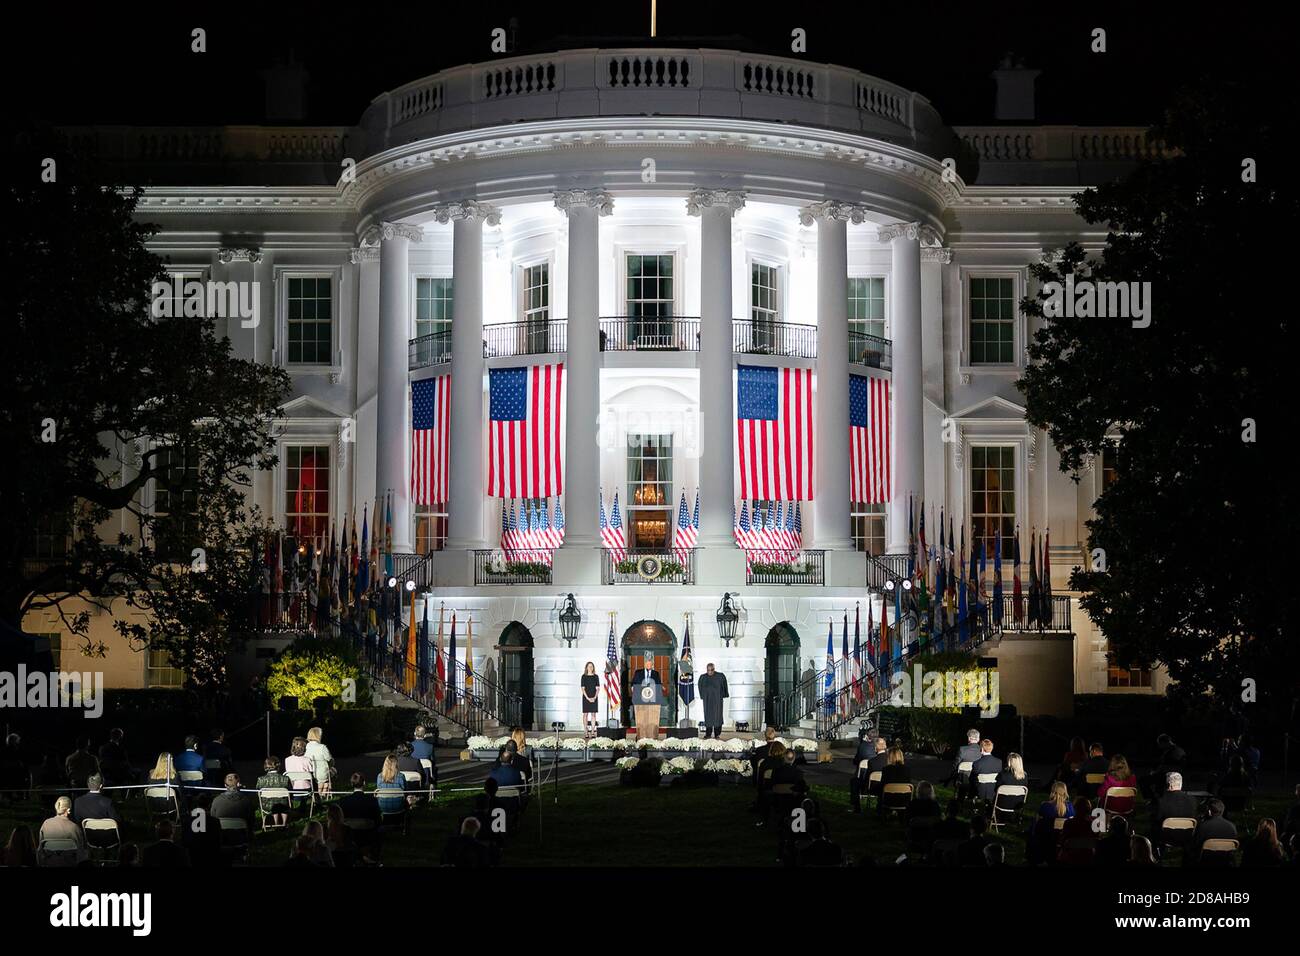 Le président Donald J. Trump prononce un discours lors de la cérémonie d'assermentation de Amy Coney Barrett en tant que juge associée de la Cour suprême des États-Unis, le lundi 26 octobre 2020, sur la pelouse sud de la Maison Blanche. (ÉTATS-UNIS) Banque D'Images